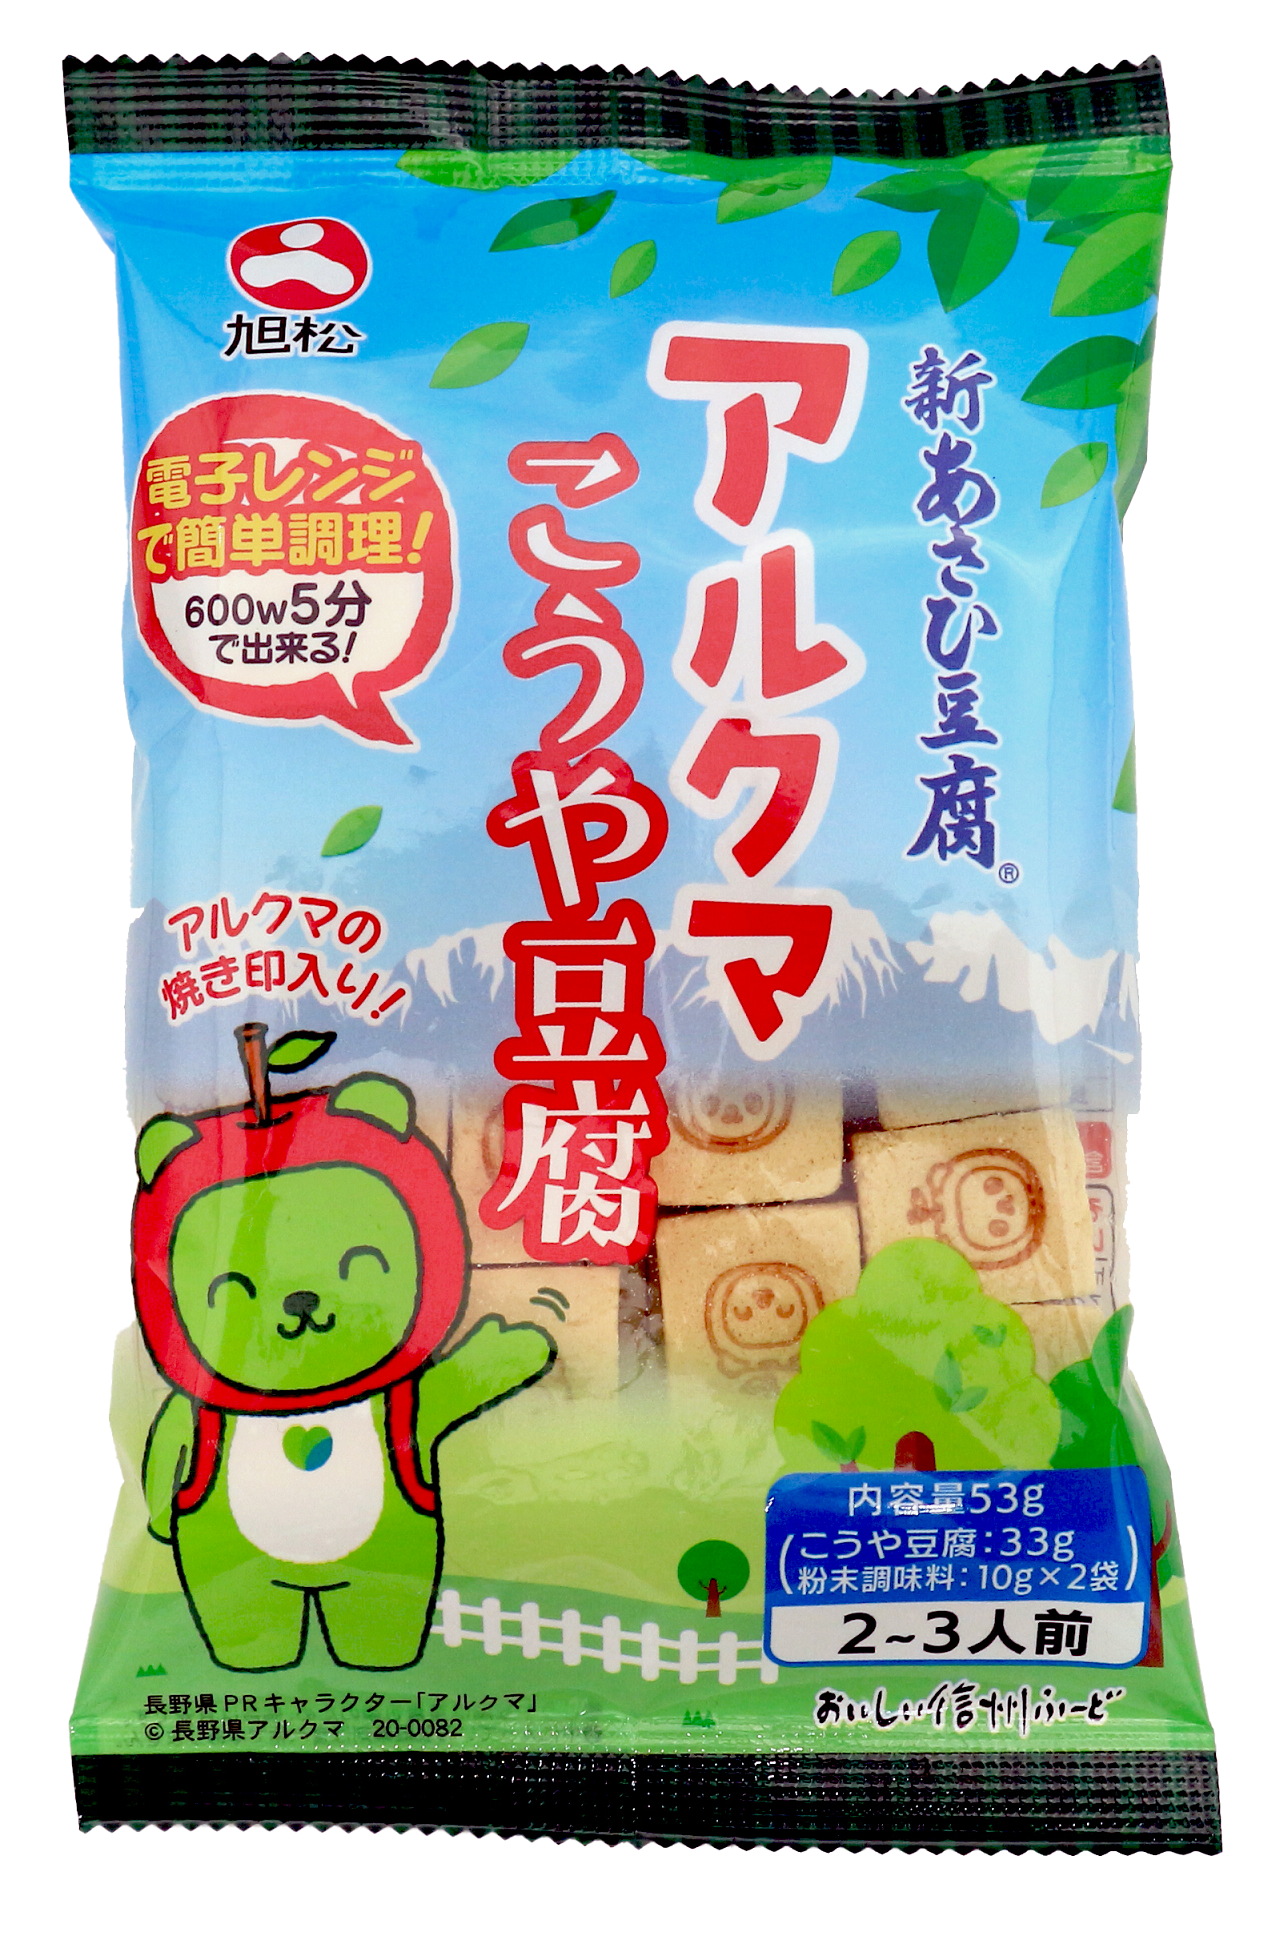 信州アルクマ の高野豆腐を新発売 旭松食品株式会社のプレスリリース